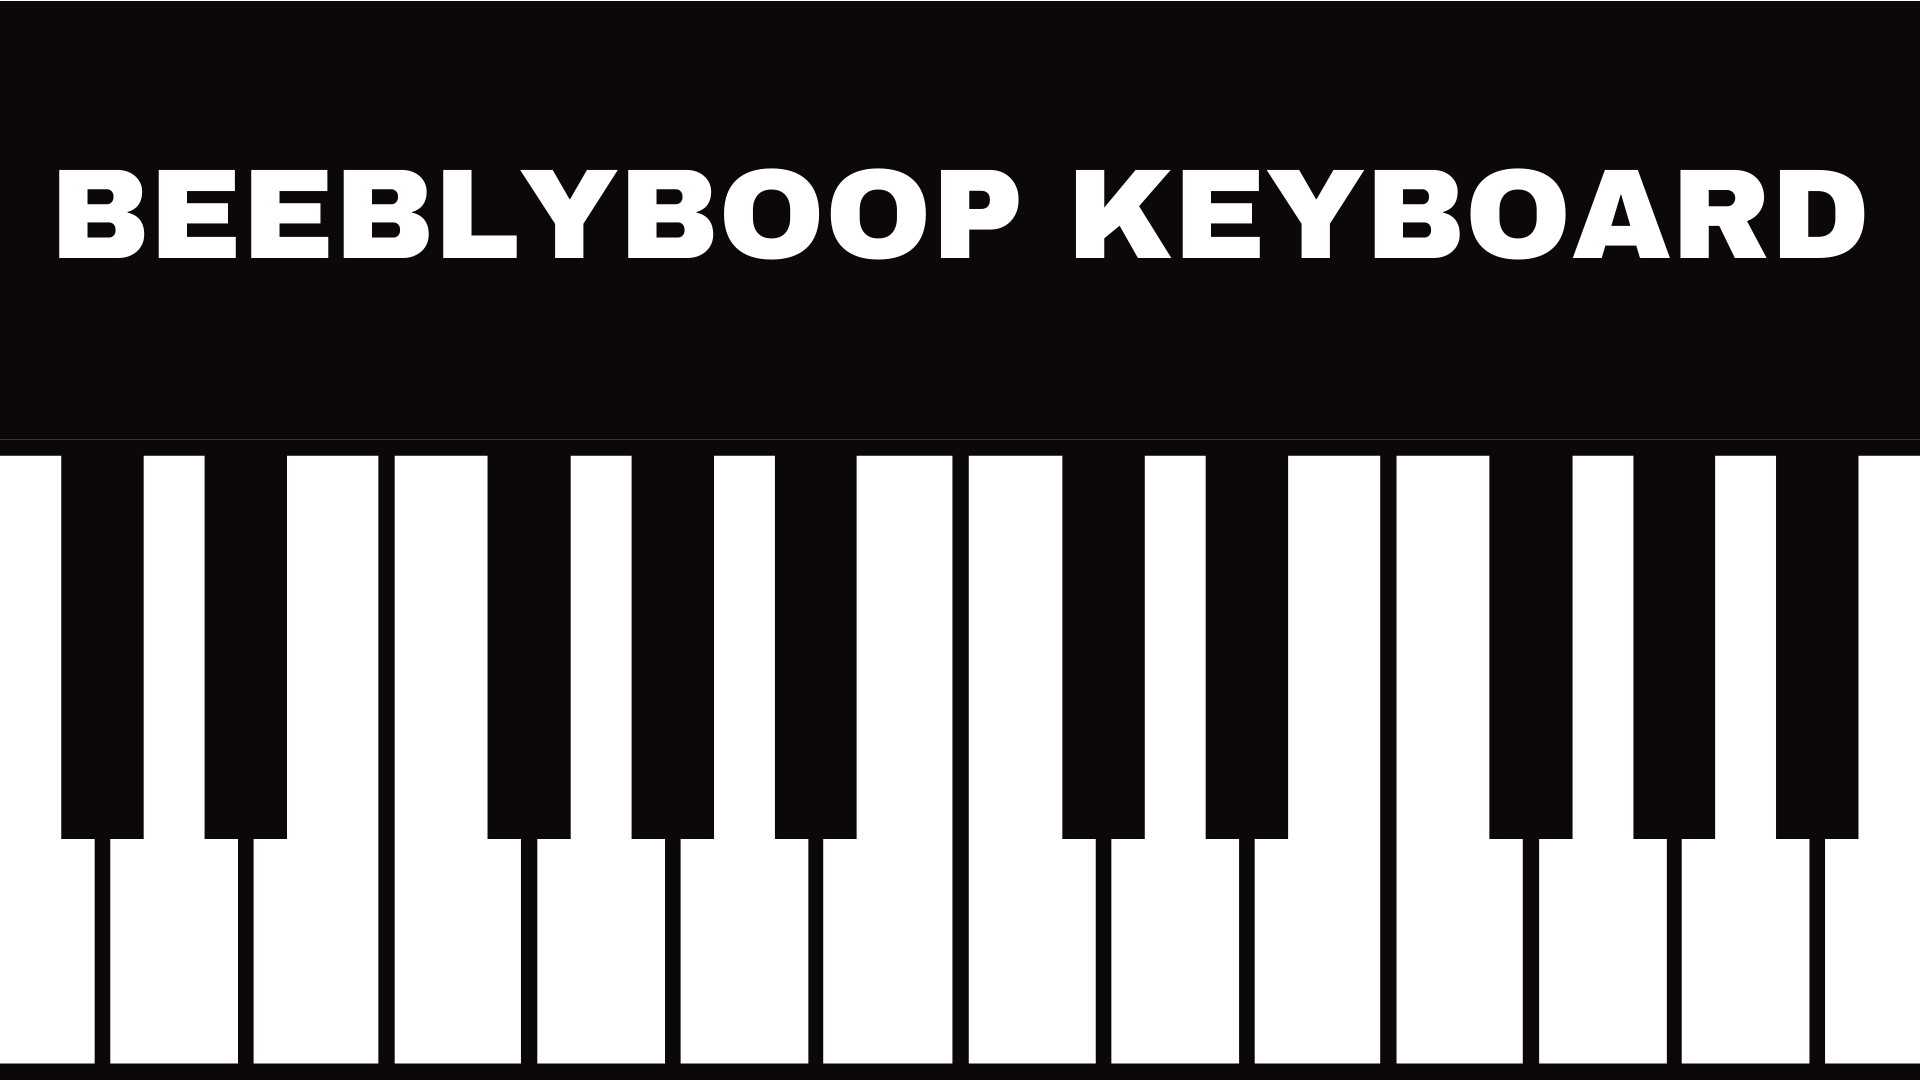 Beeblyboop Keyboard